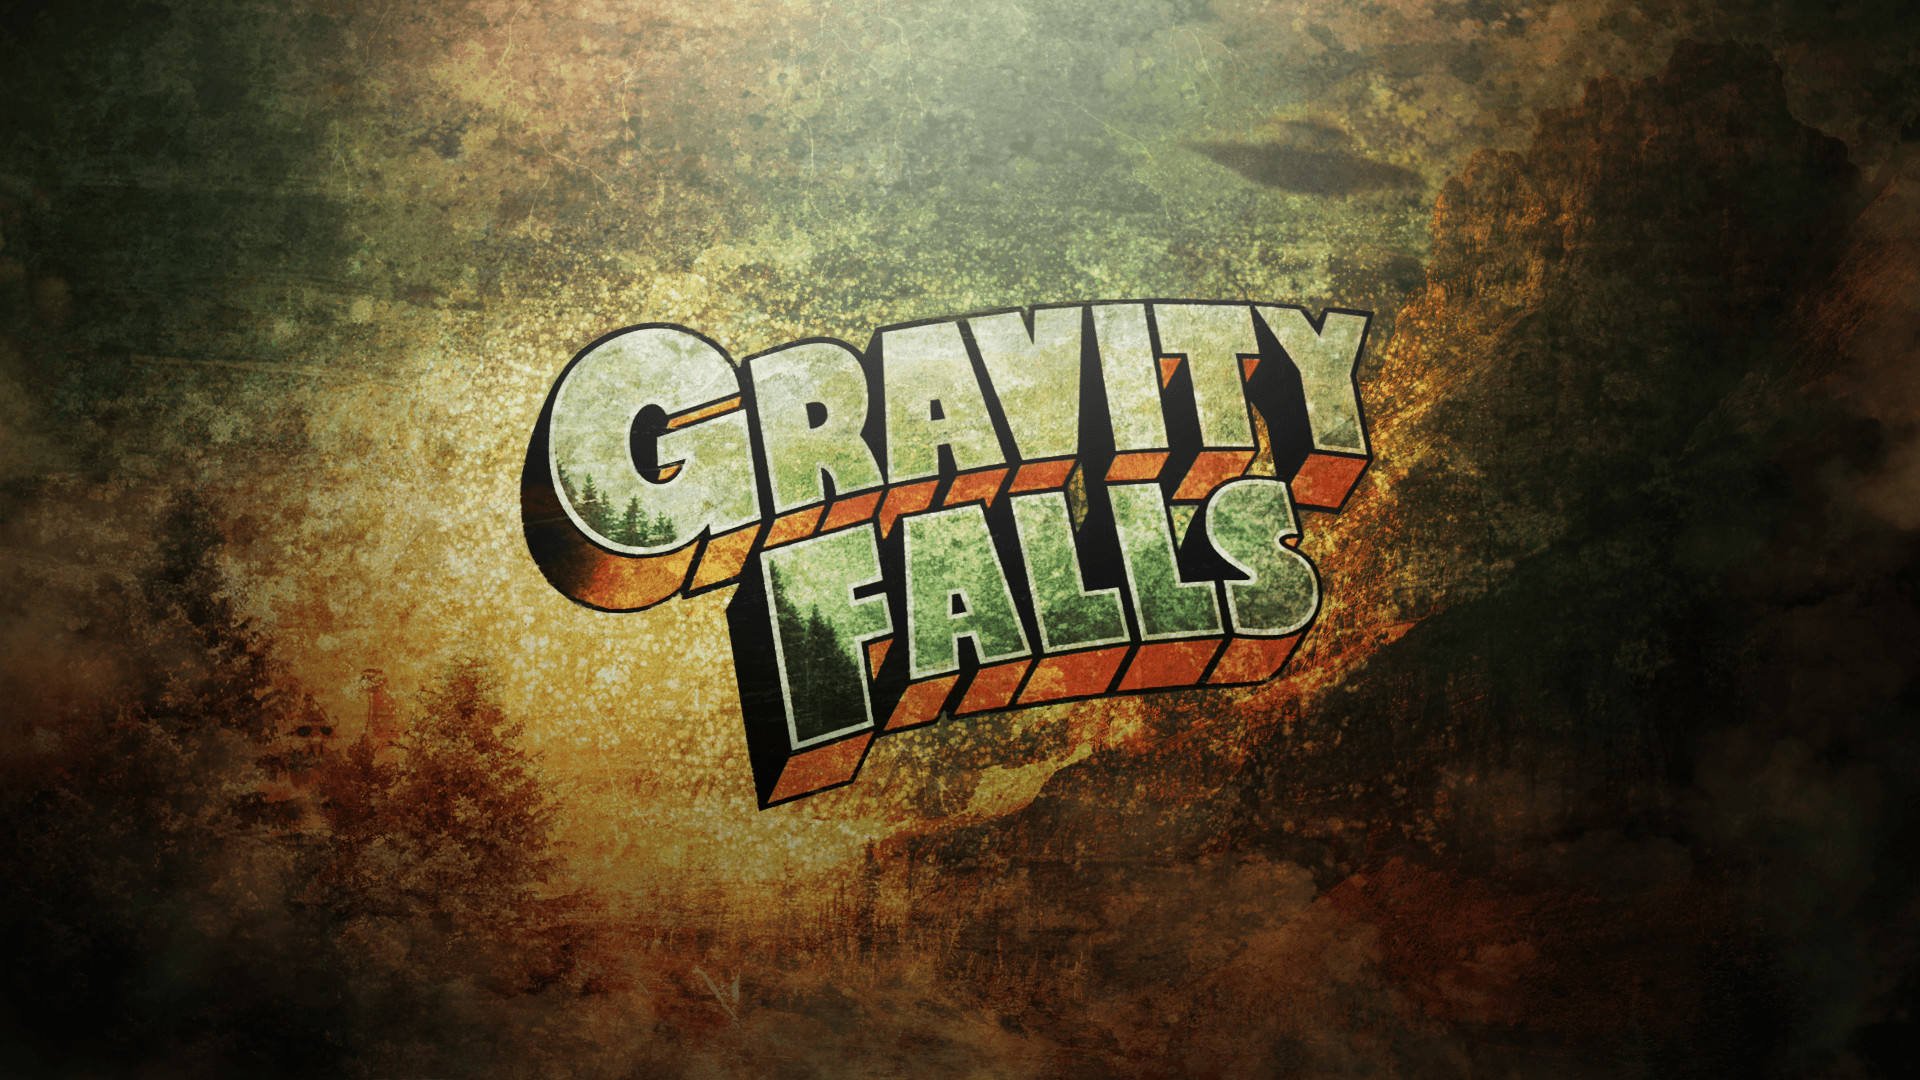 1920x1080 Gravity Falls Wallpaper HD 4 - 1920 X 1080